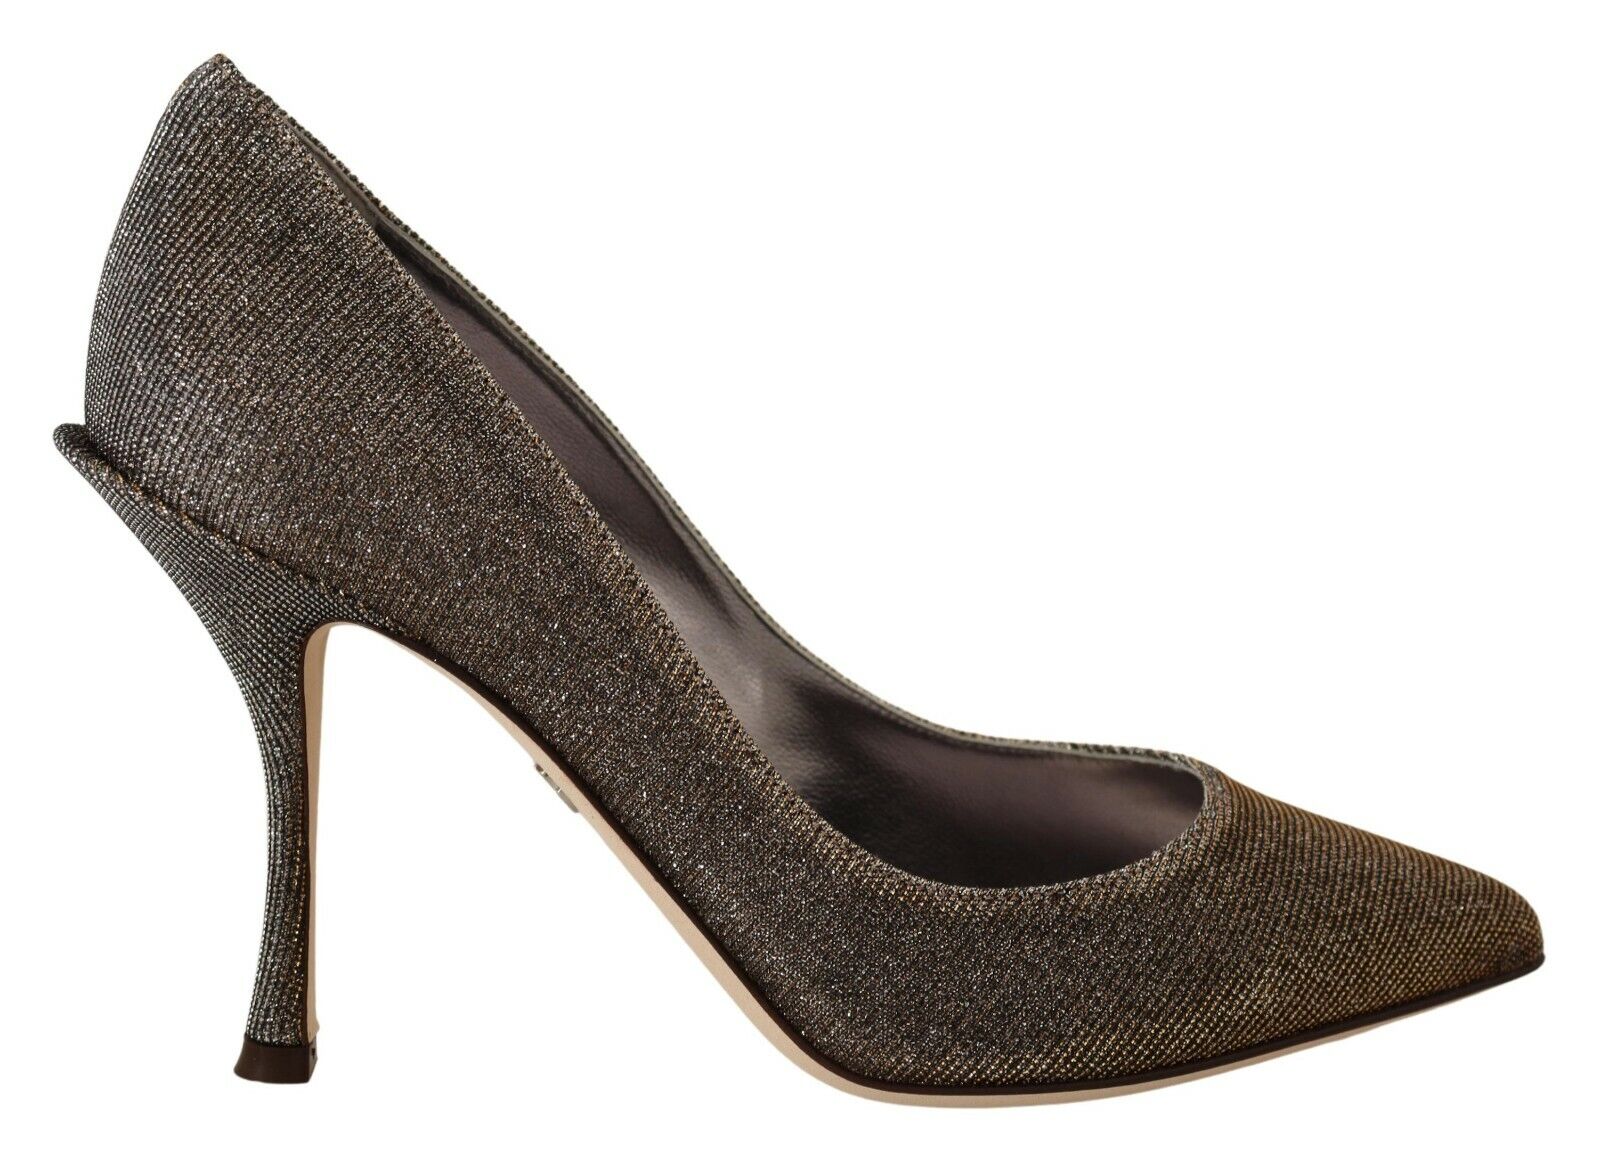 DOLCE & GABBANA Shoes Туфли-лодочки на тканевом каблуке цвета золотистого и серебристого цвета, EU36 / US5,5 Рекомендуемая розничная цена 700 долларов США